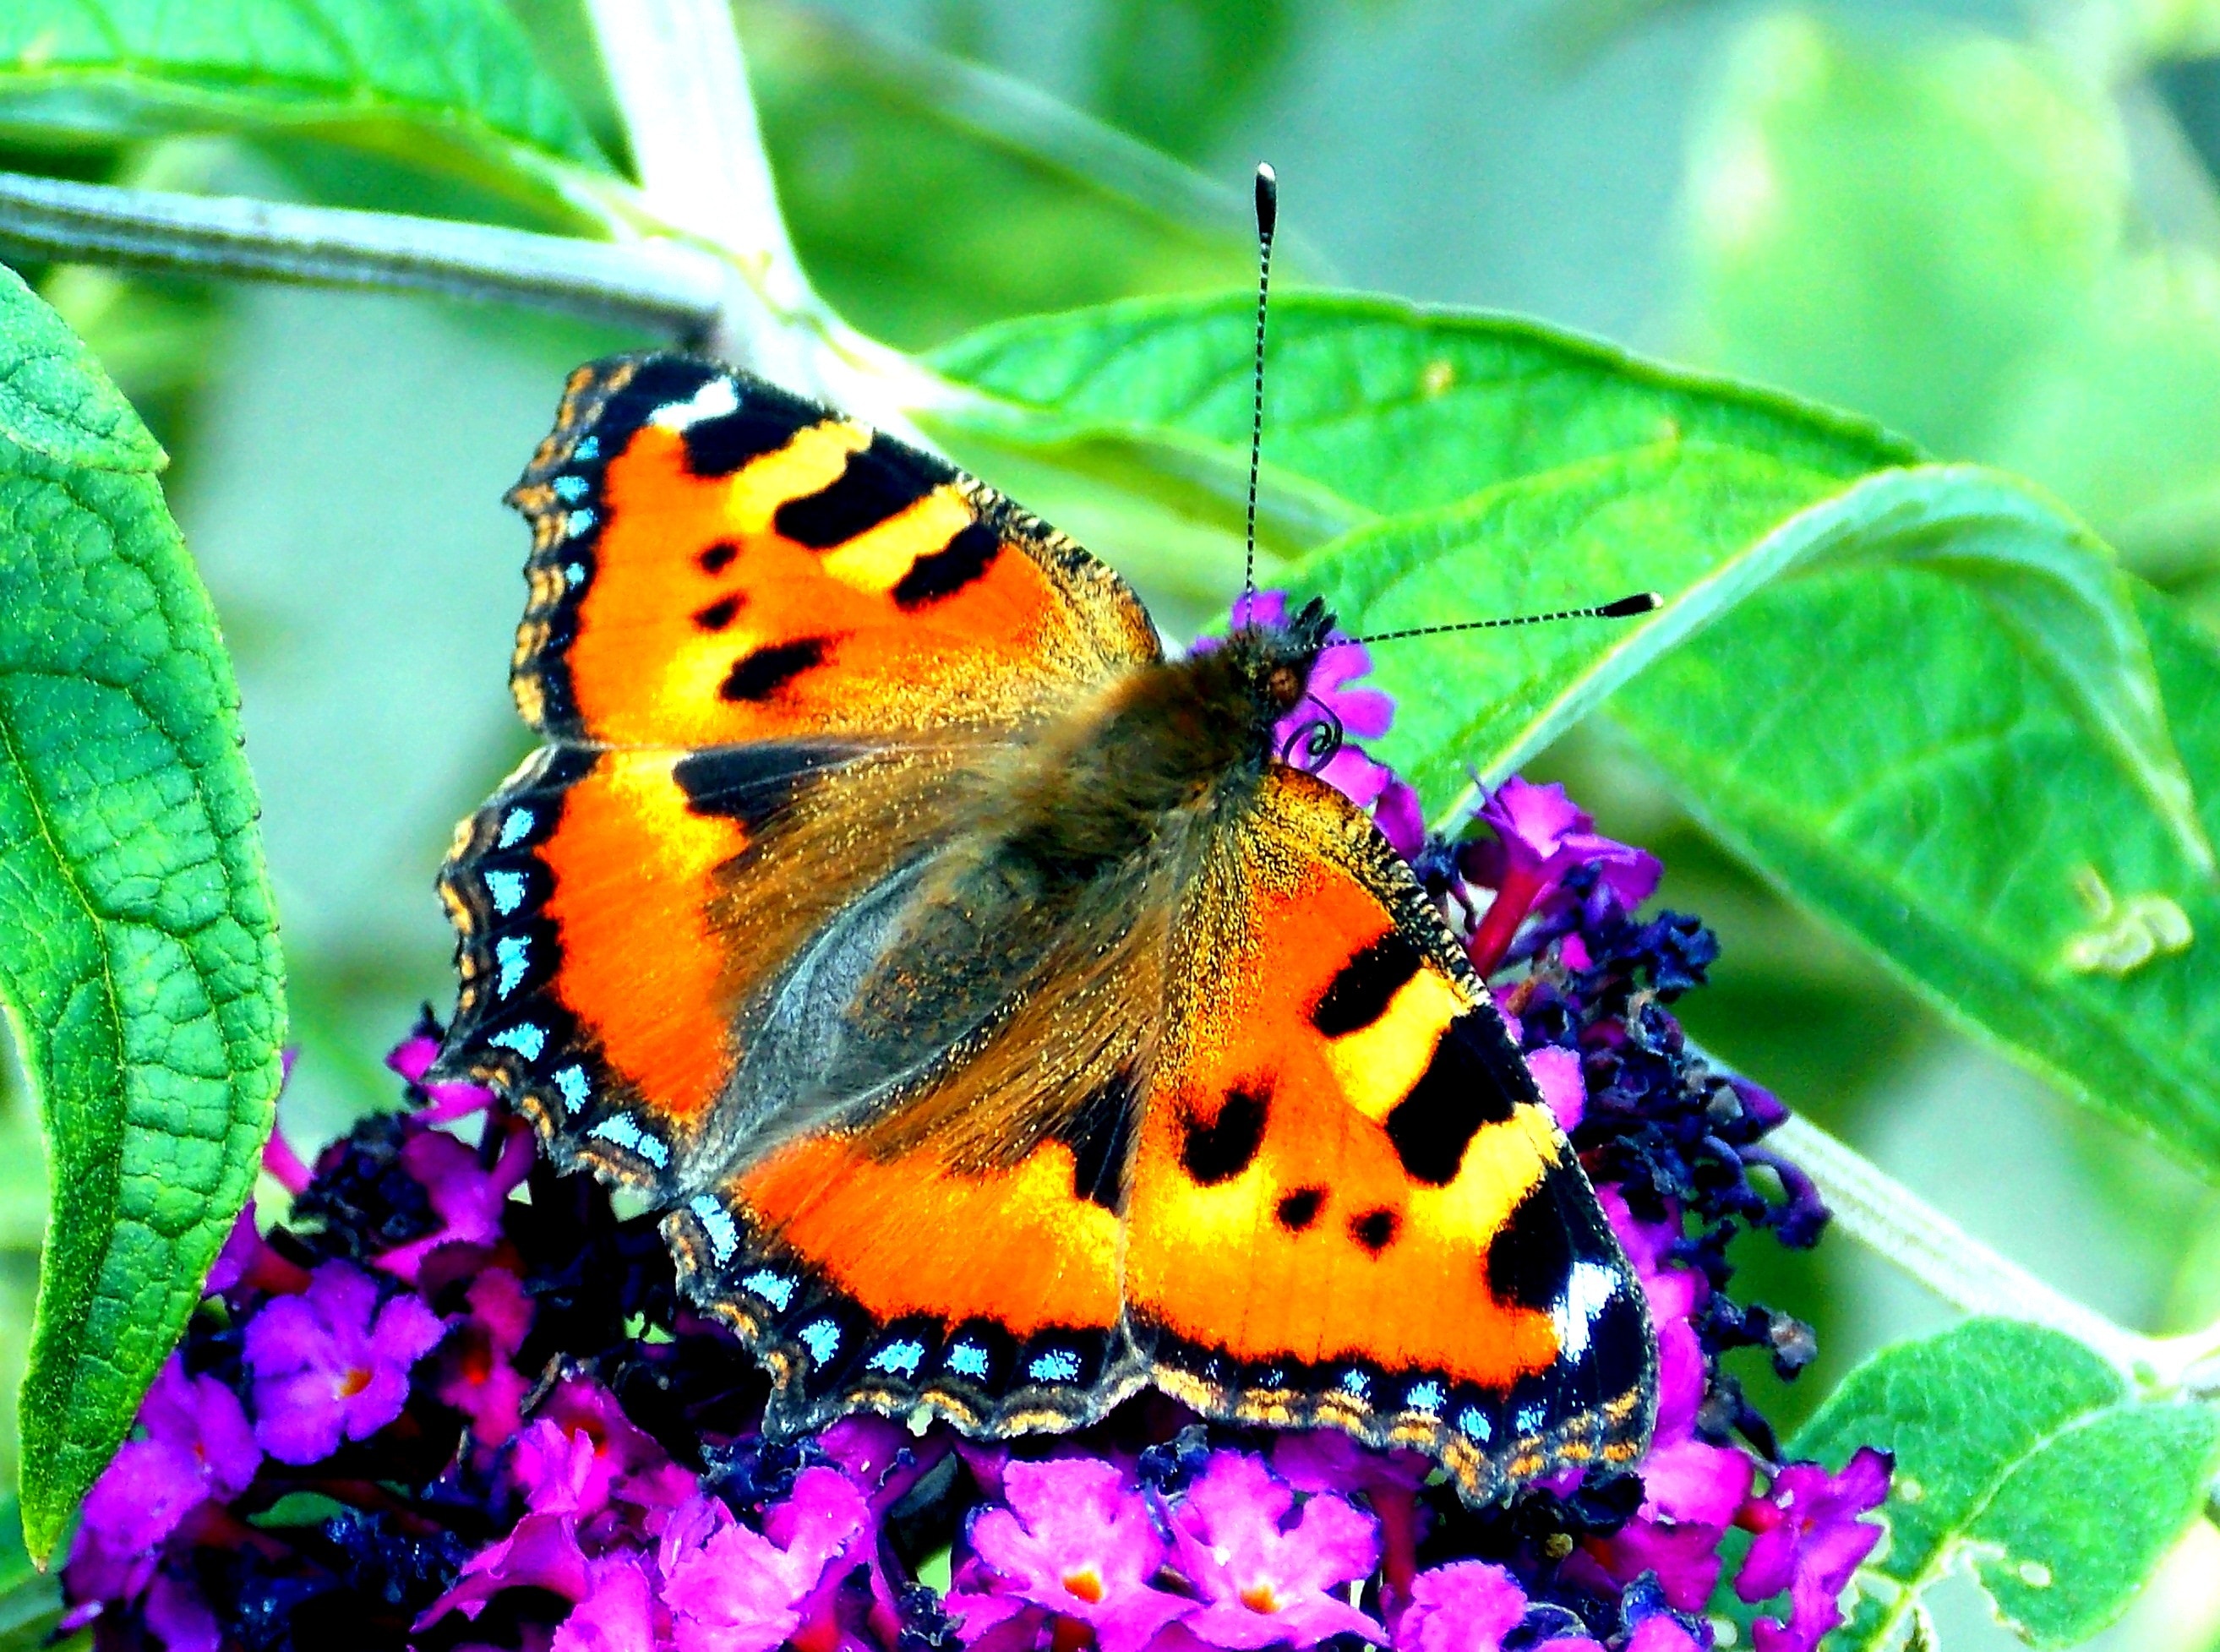 toirtoiseshell butterfly